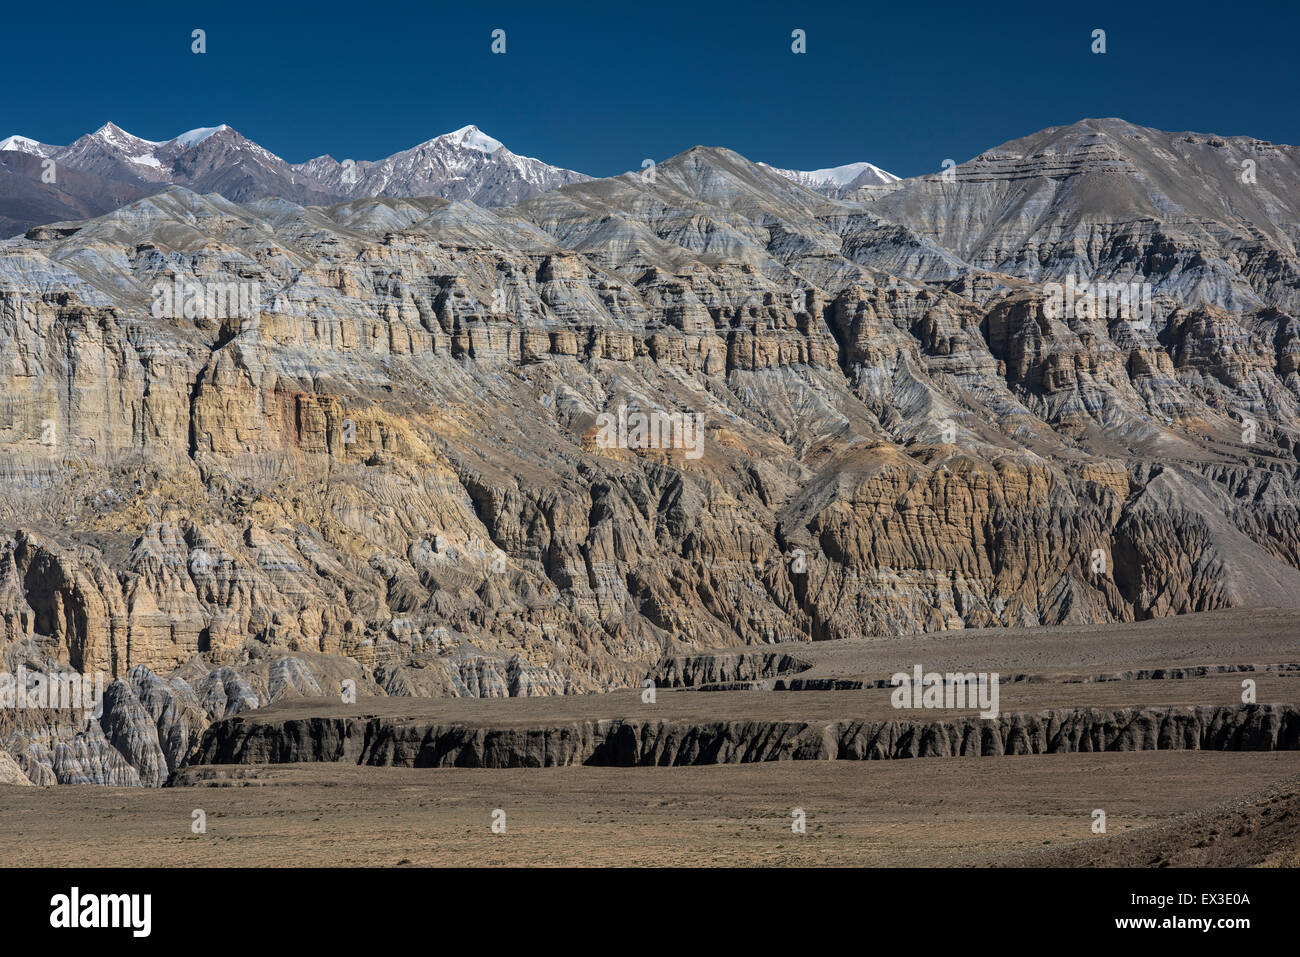 Montagne, formazioni rocciose, montagne coperte di neve, il paesaggio eroso di colori differenti a seconda della composizione minerale Foto Stock